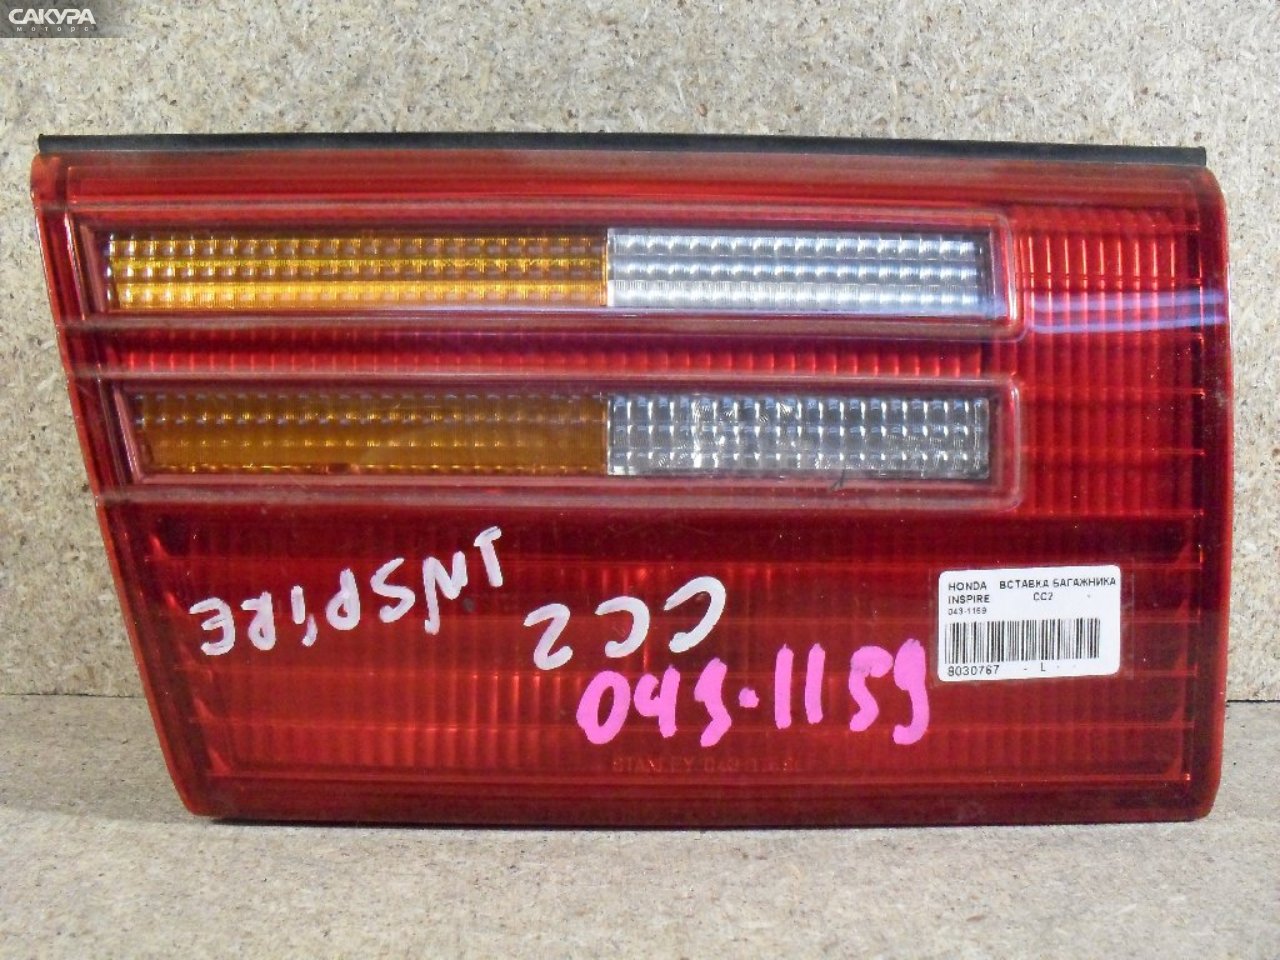 Фонарь вставка багажника левый Honda Inspire CC2 043-1159: купить в Сакура Абакан.